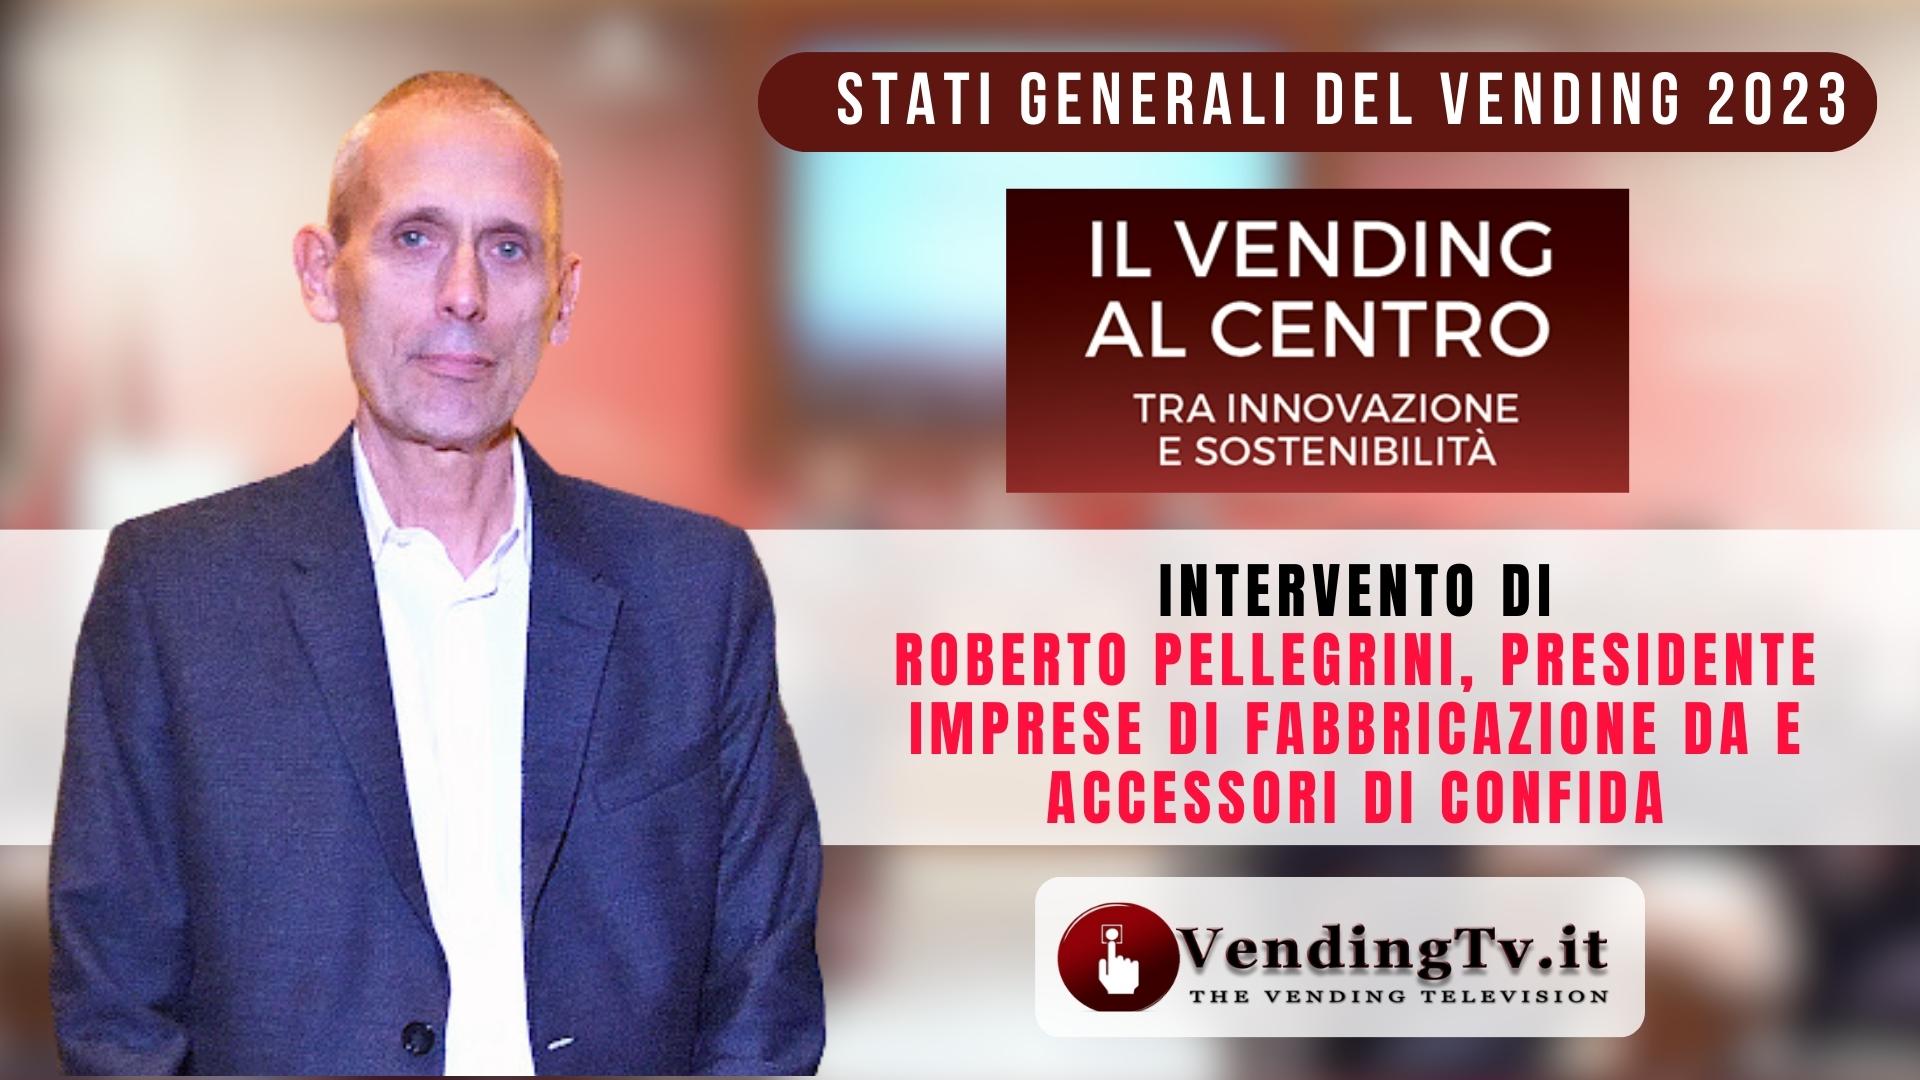 Youtube - Intervento di Intervento di Roberto Pellegrini, Presidente Imprese di Fabbricazione DA e accessori di CONFIDA